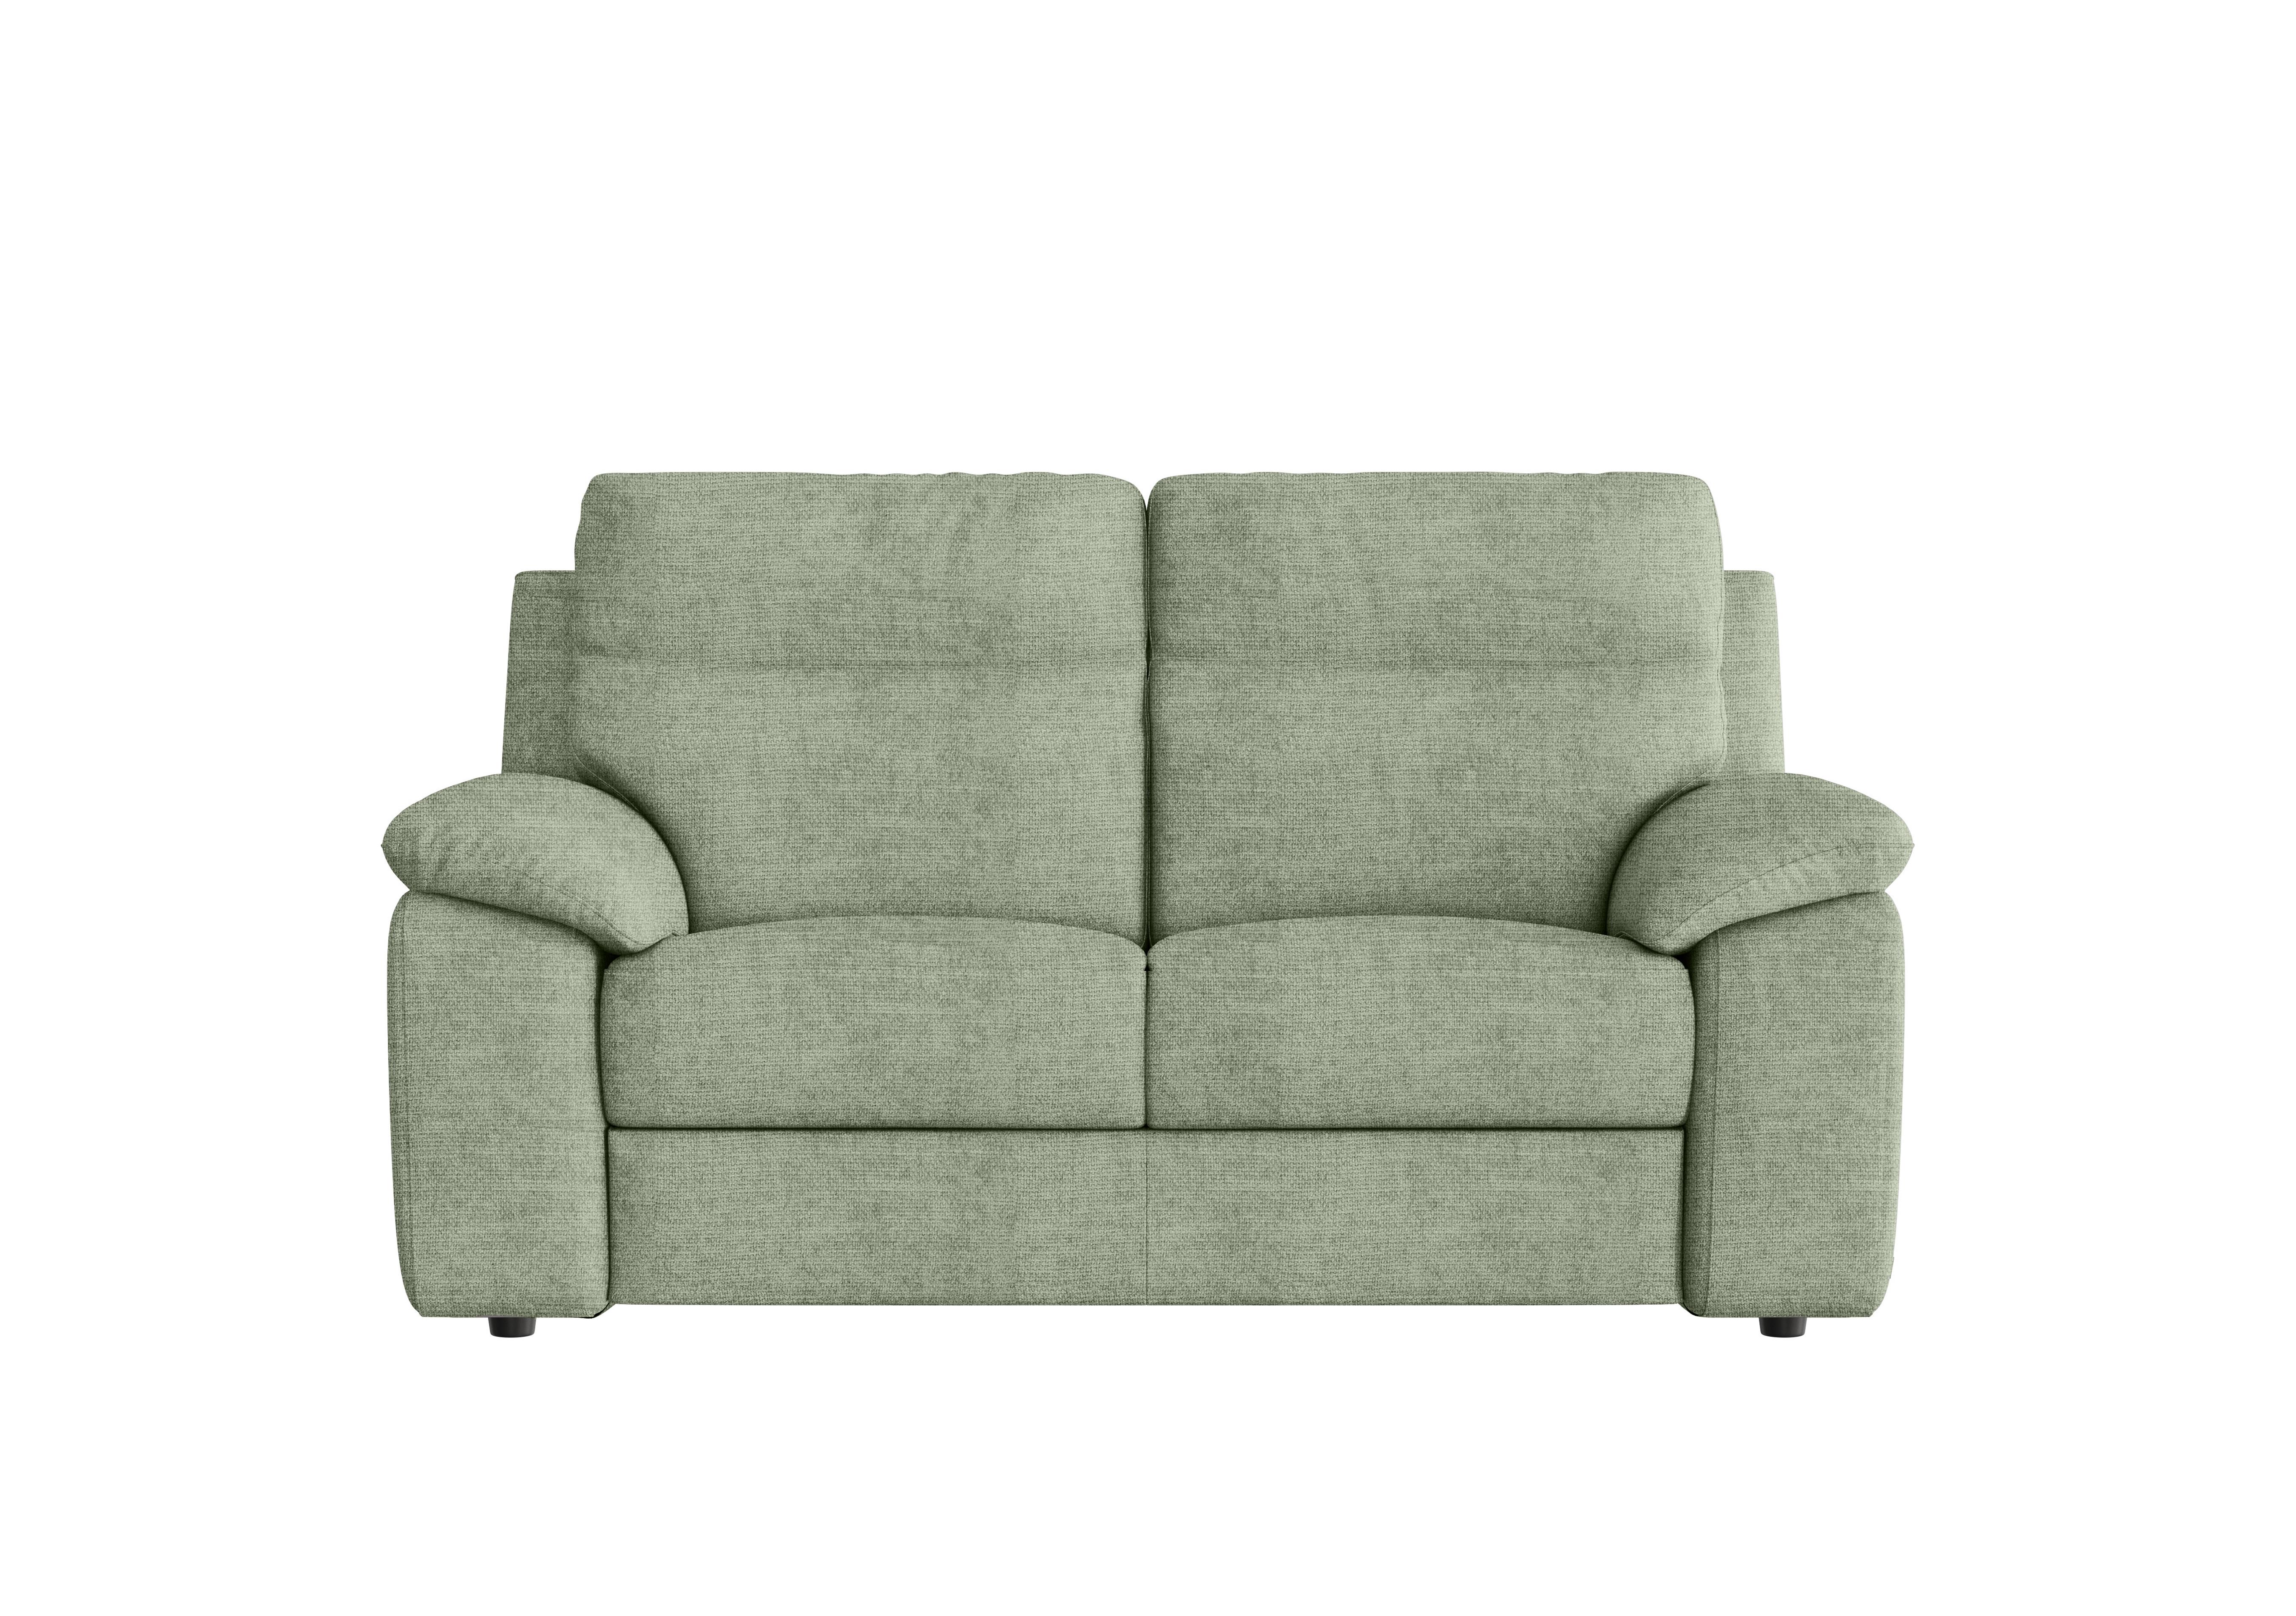 Pepino 2 Seater Fabric Sofa in Baobab Muschio 538 on Furniture Village